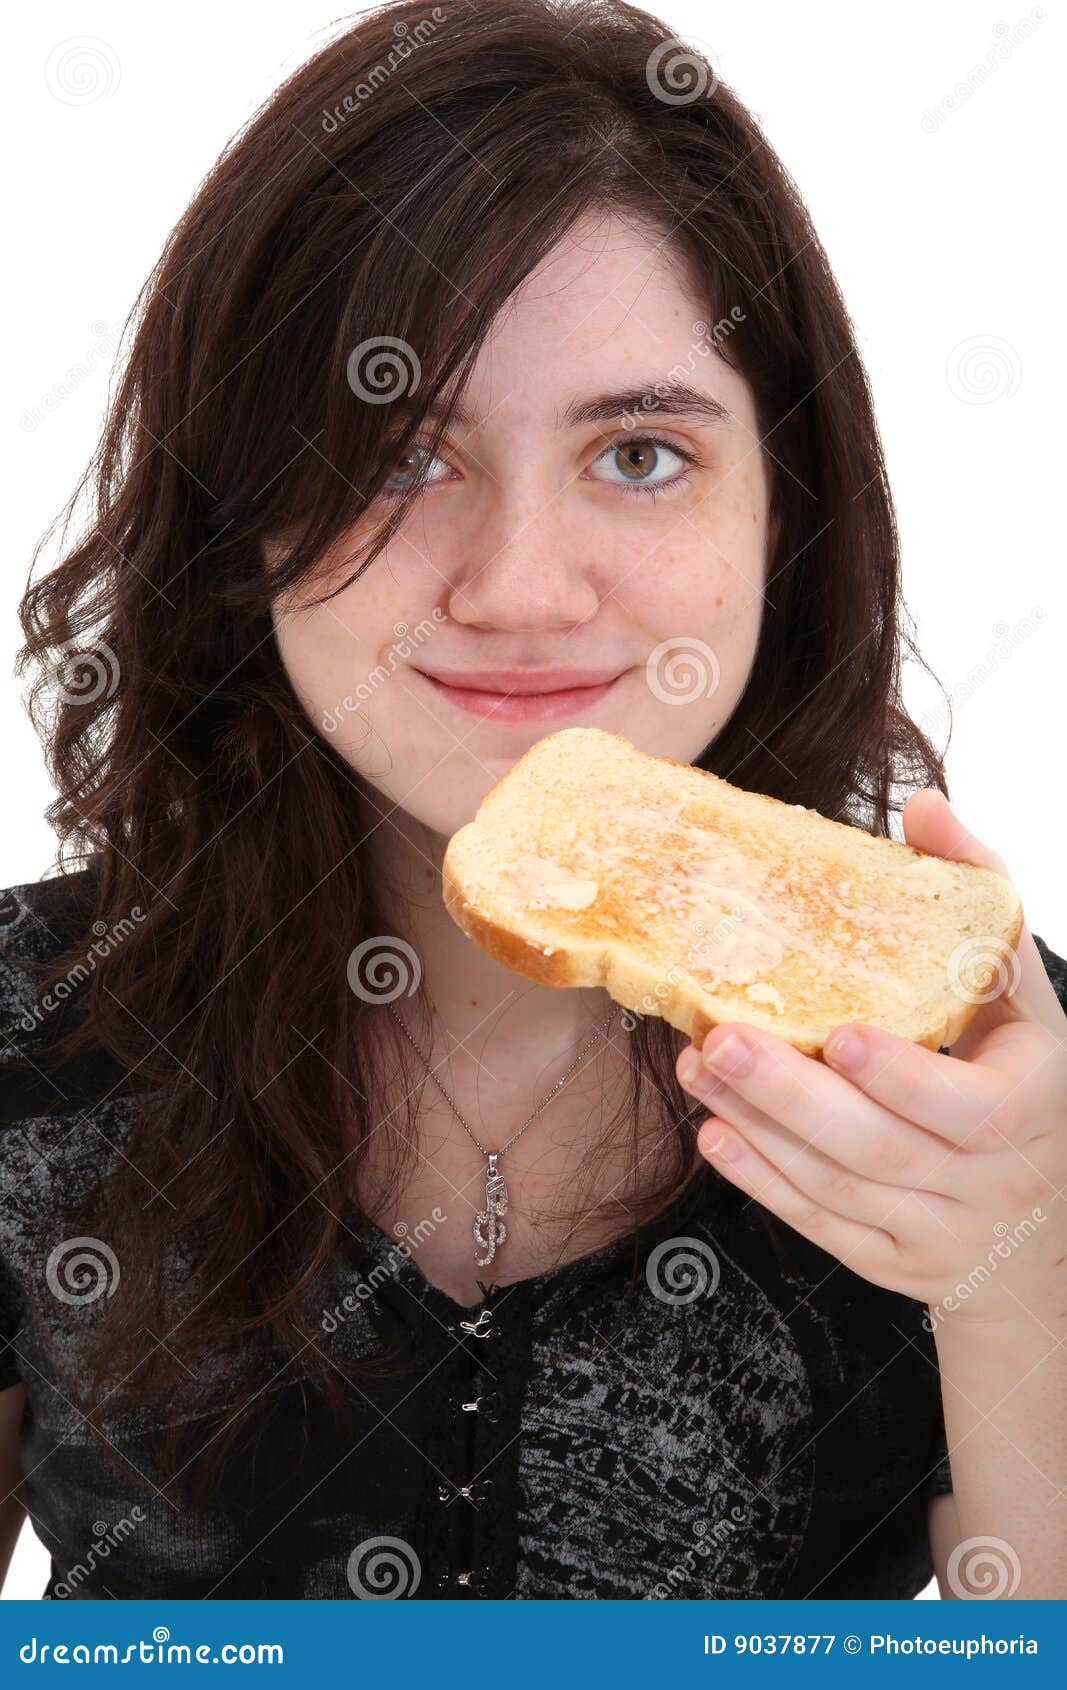 Teen Girl Eating Dreamstime